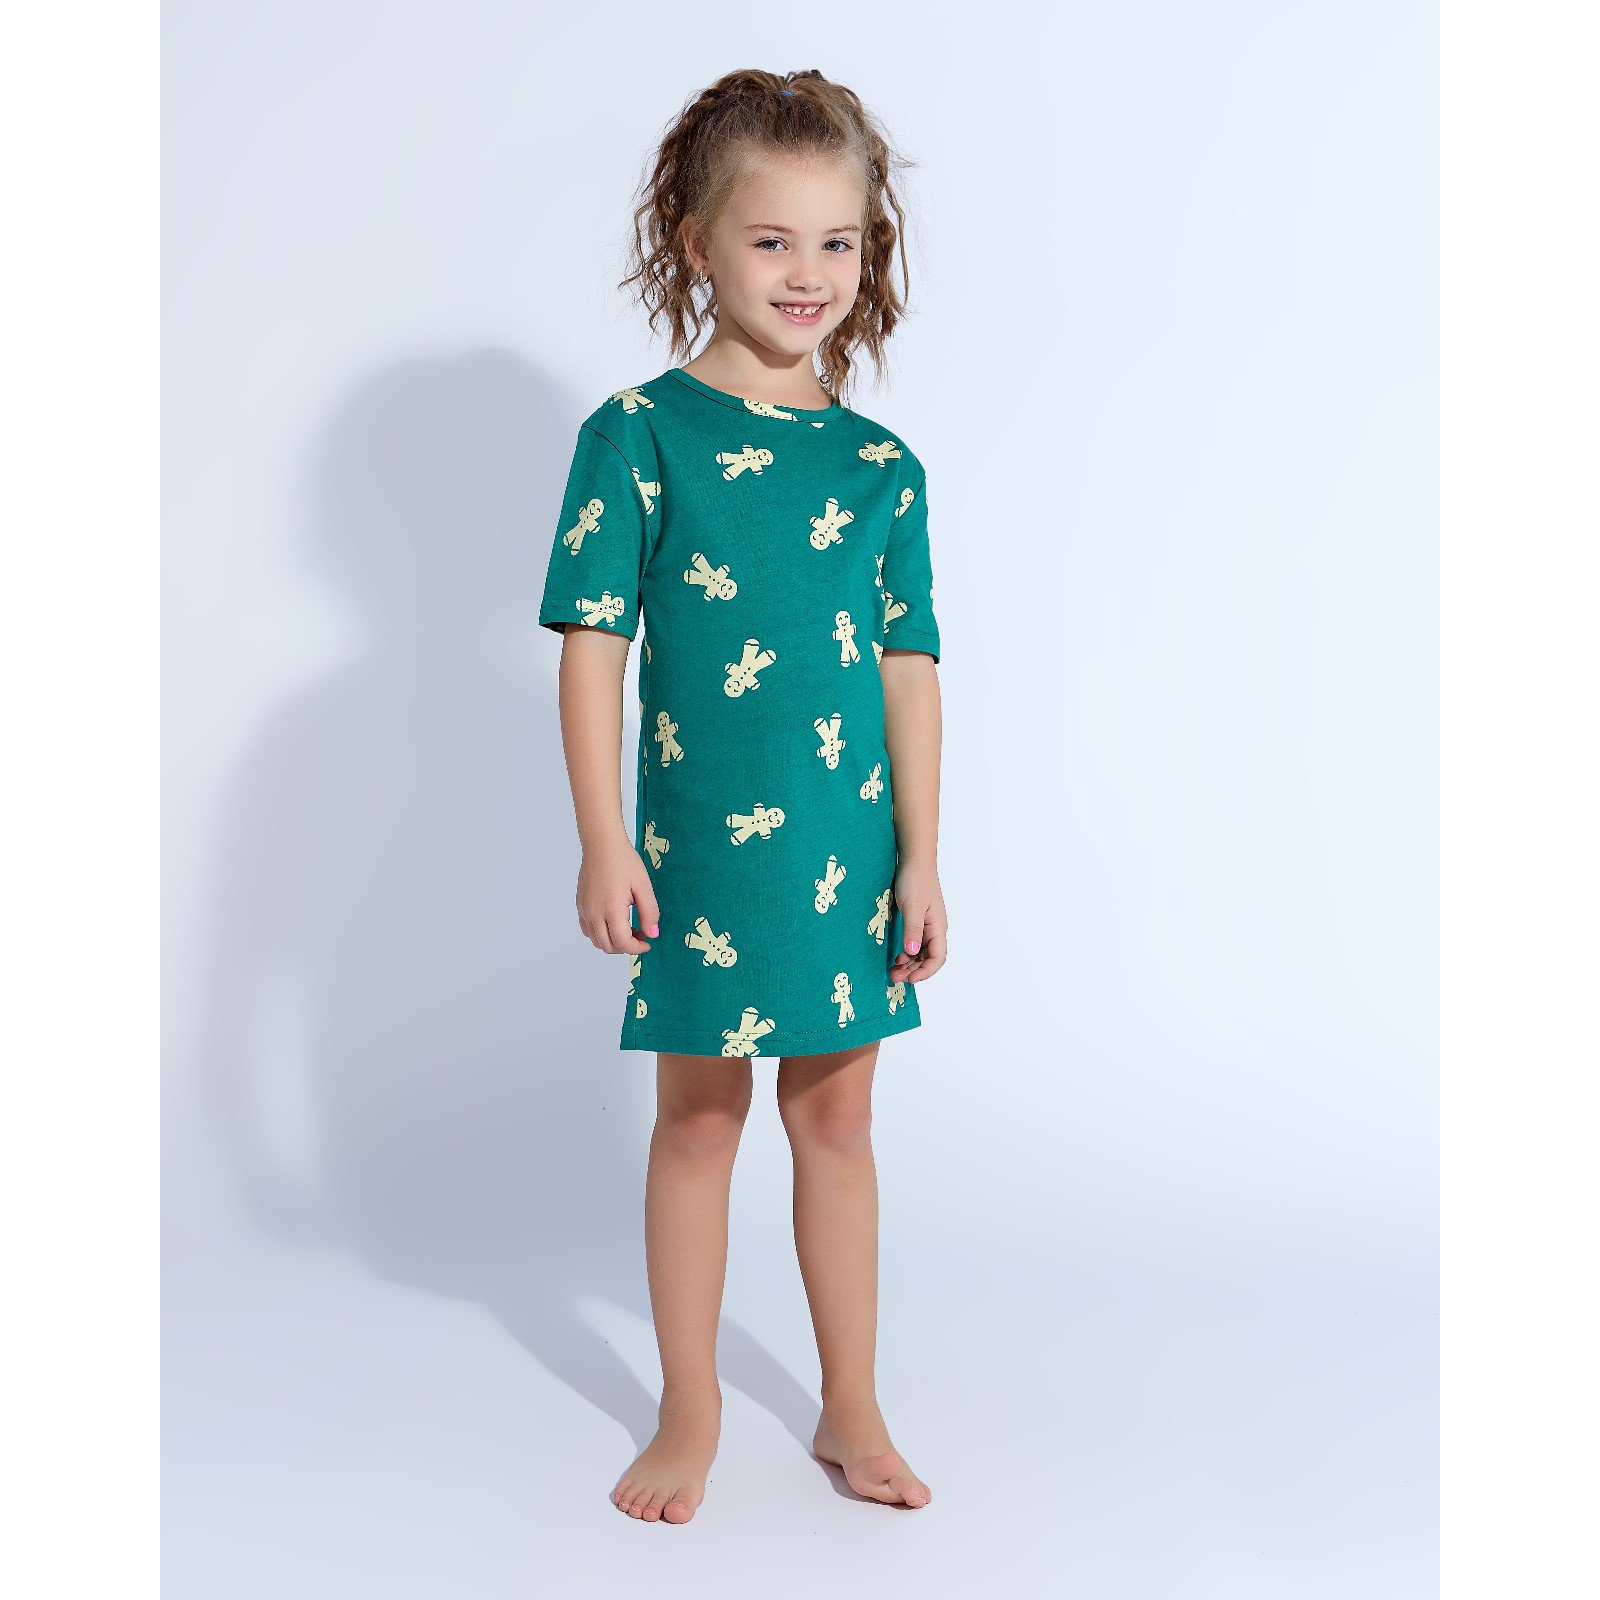 Детская ночная сорочка Печеньки Цвет: Зелёный (6 лет), размер 6 лет mak600418 Детская ночная сорочка Печеньки Цвет: Зелёный (6 лет) - фото 1